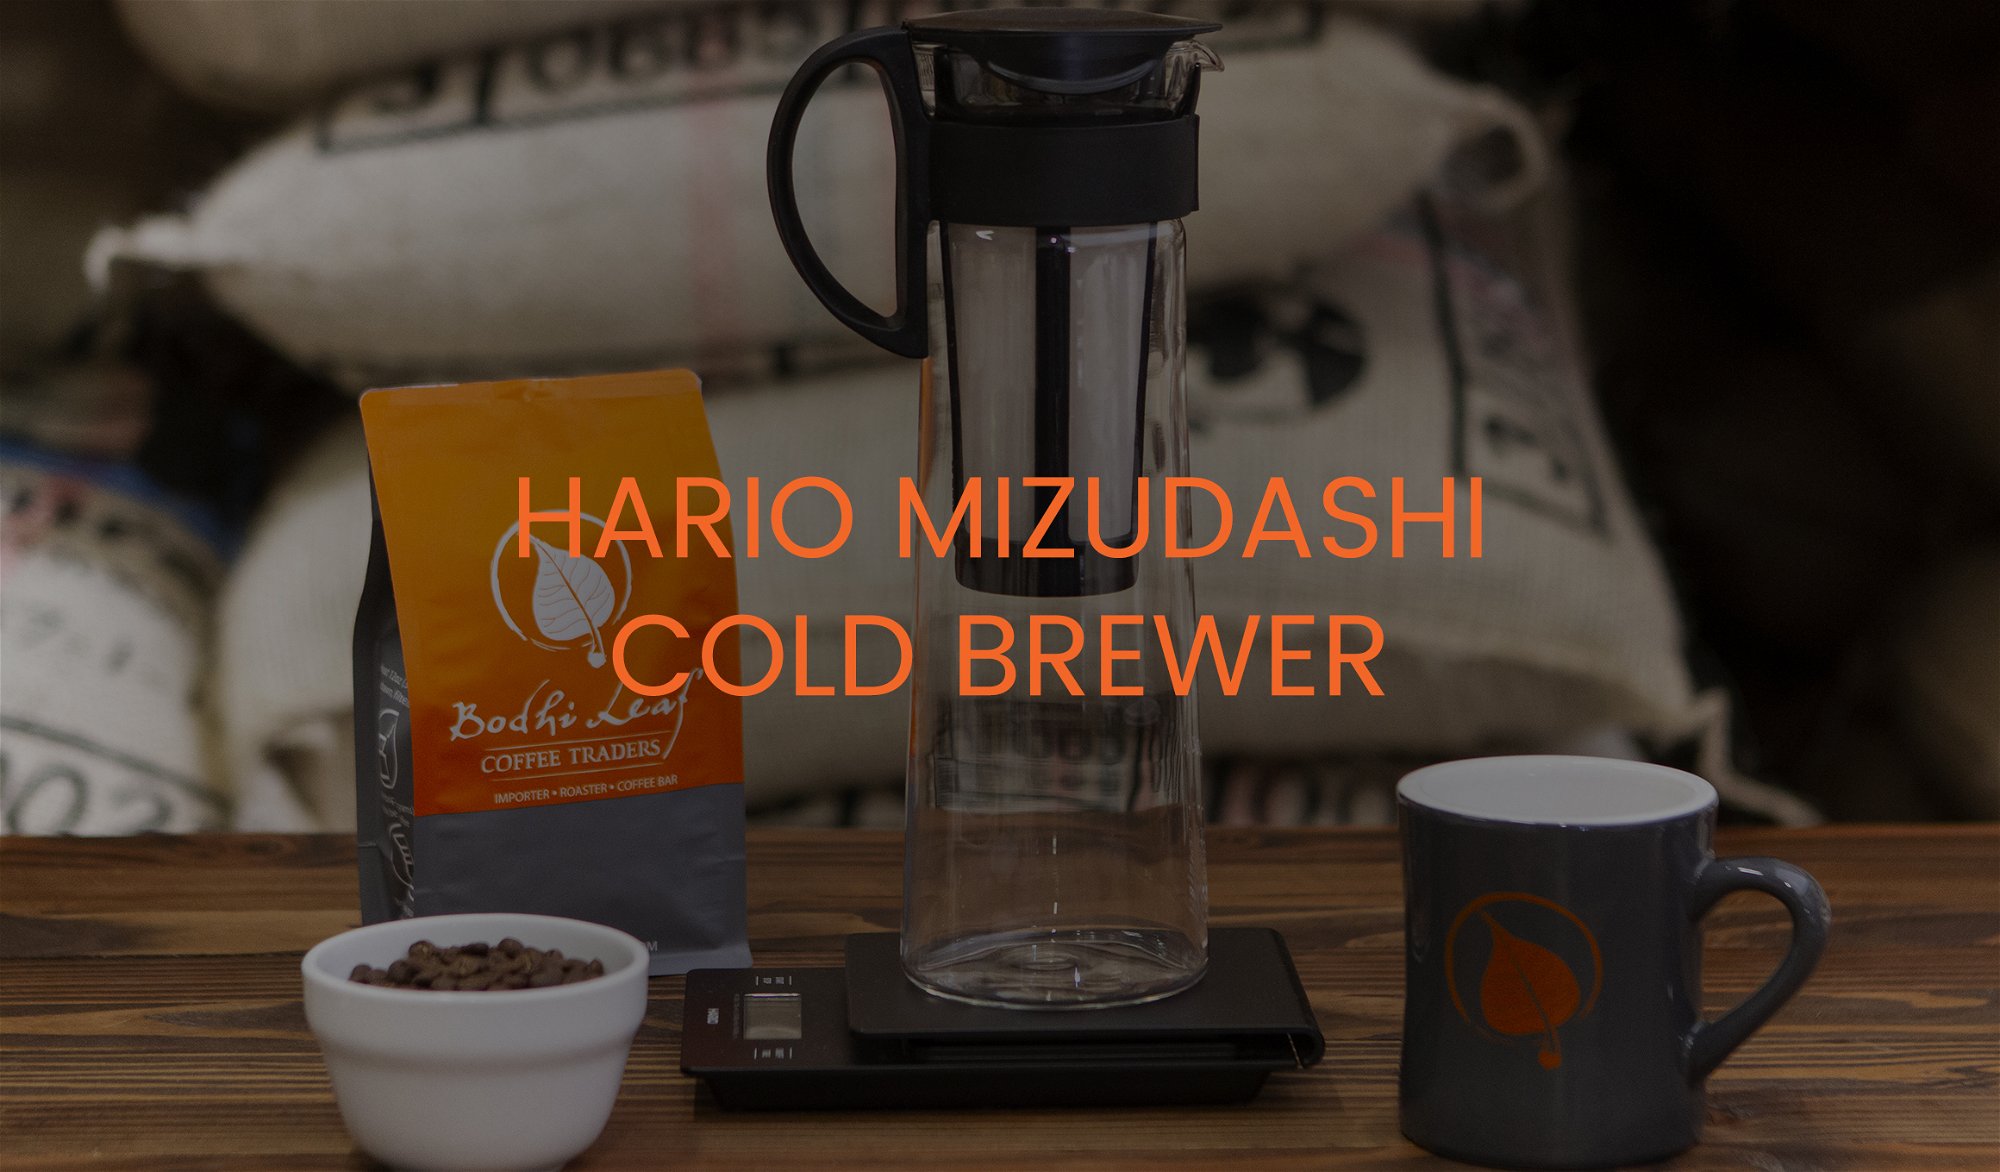 HARIO MIZUDASHI COLD BREWER